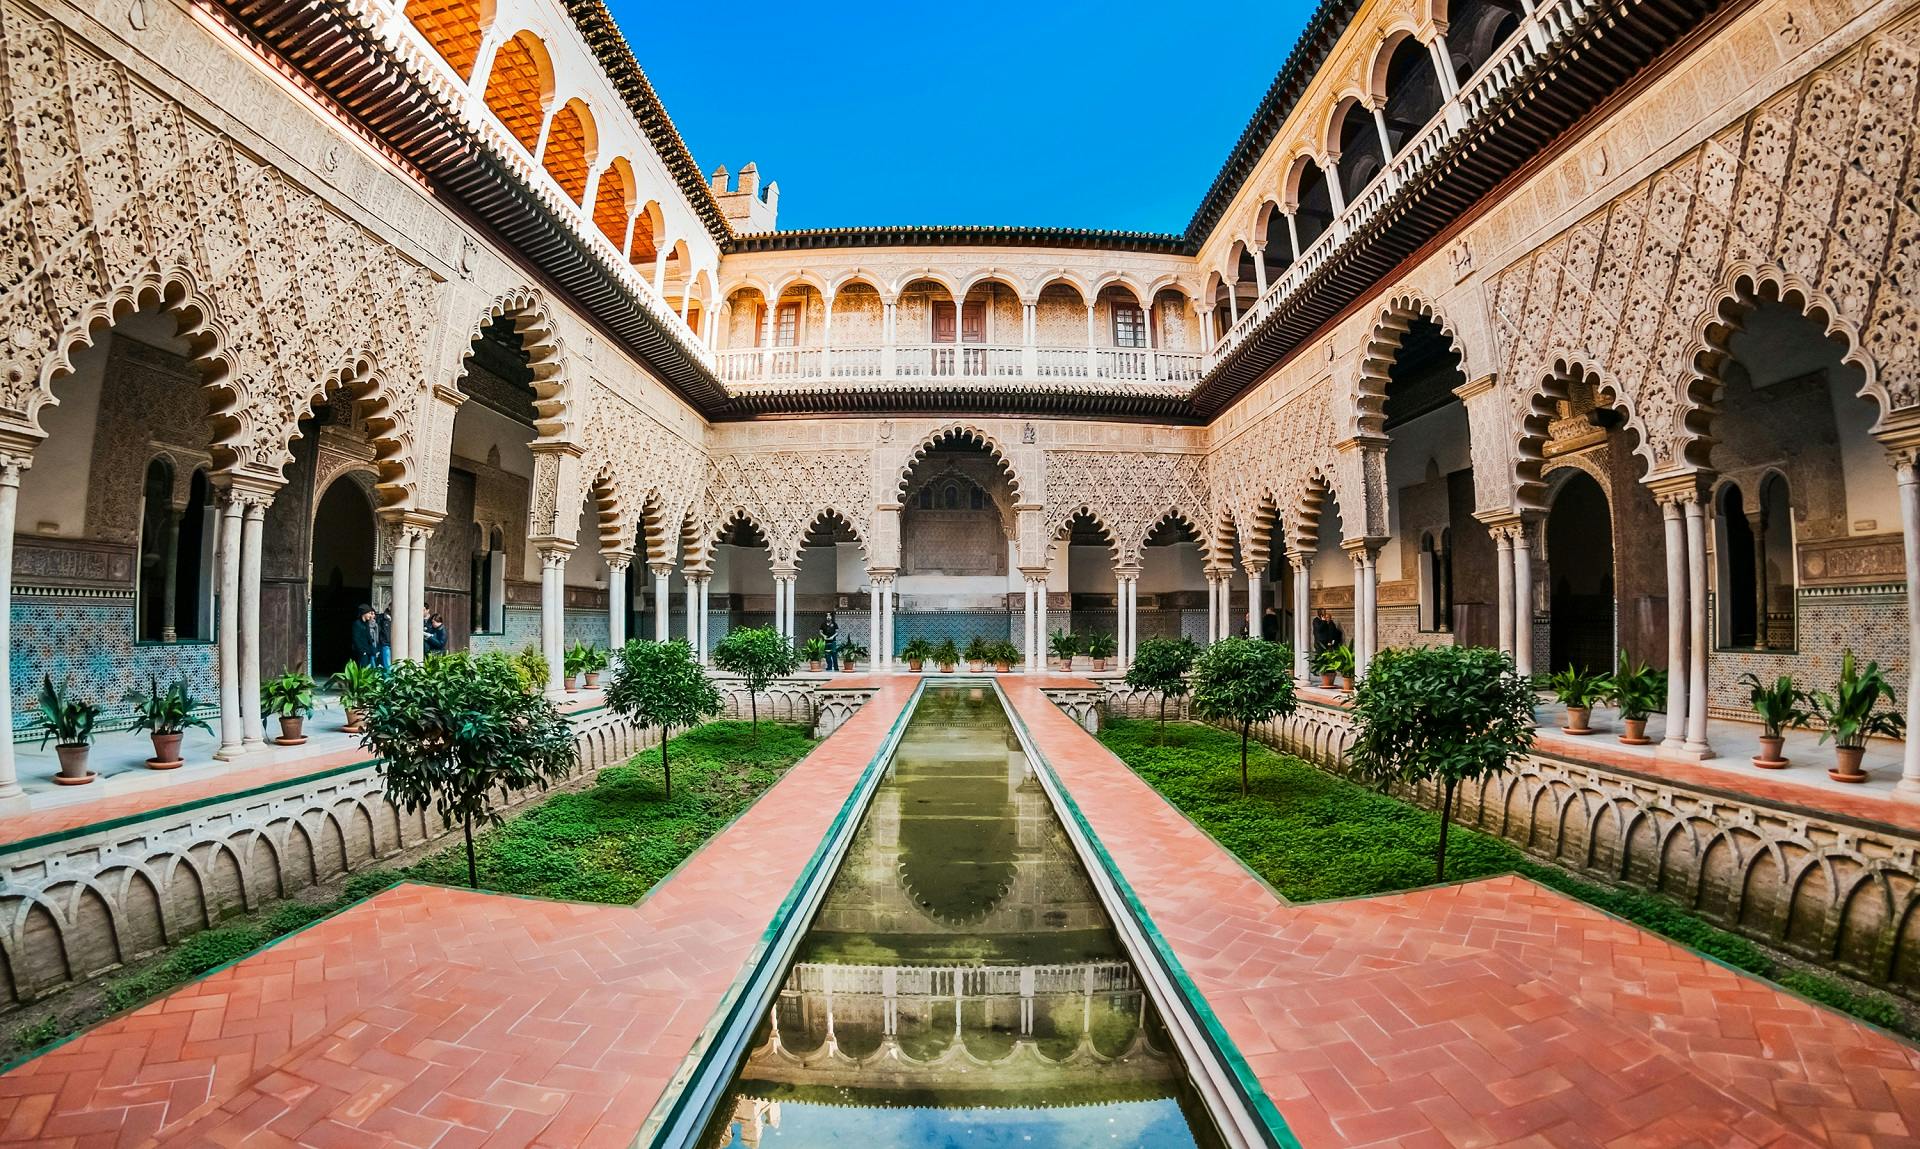 Kathedraal van Sevilla, Giralda en Alcázar skip-the-line tickets en rondleiding met gids